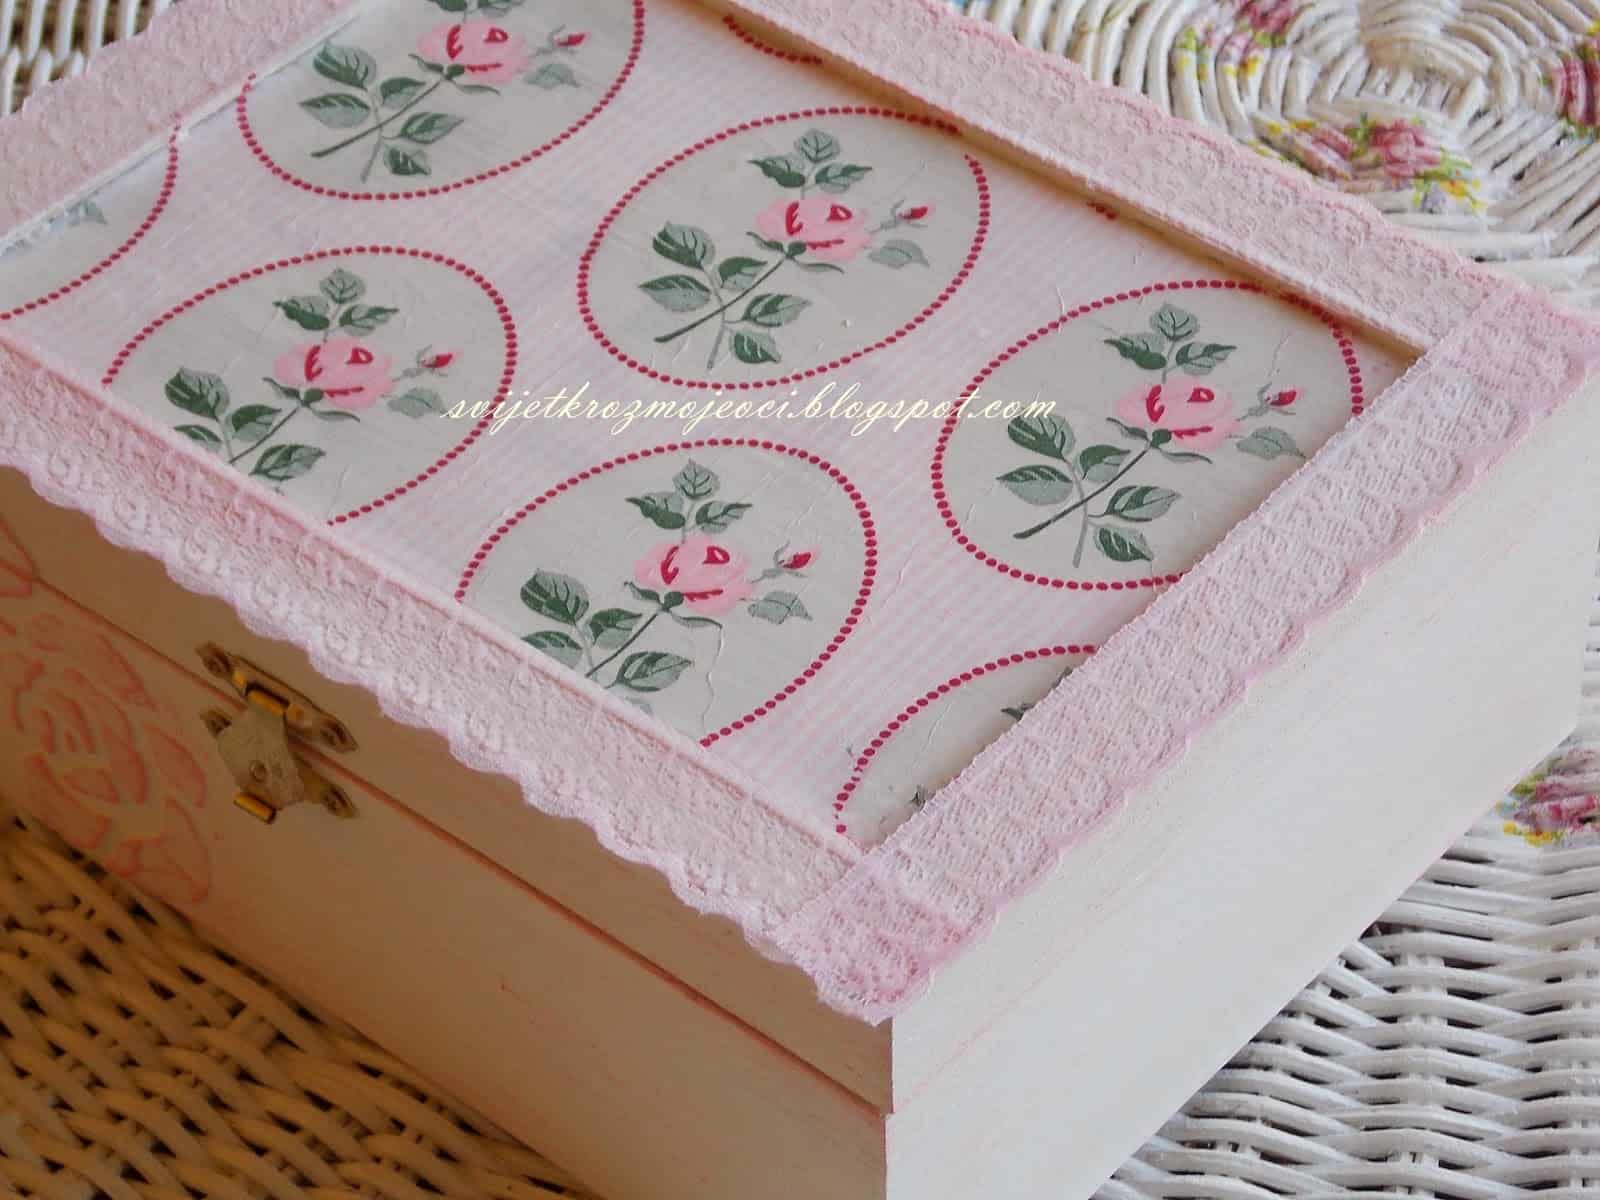 Lace and fabric jewlery box